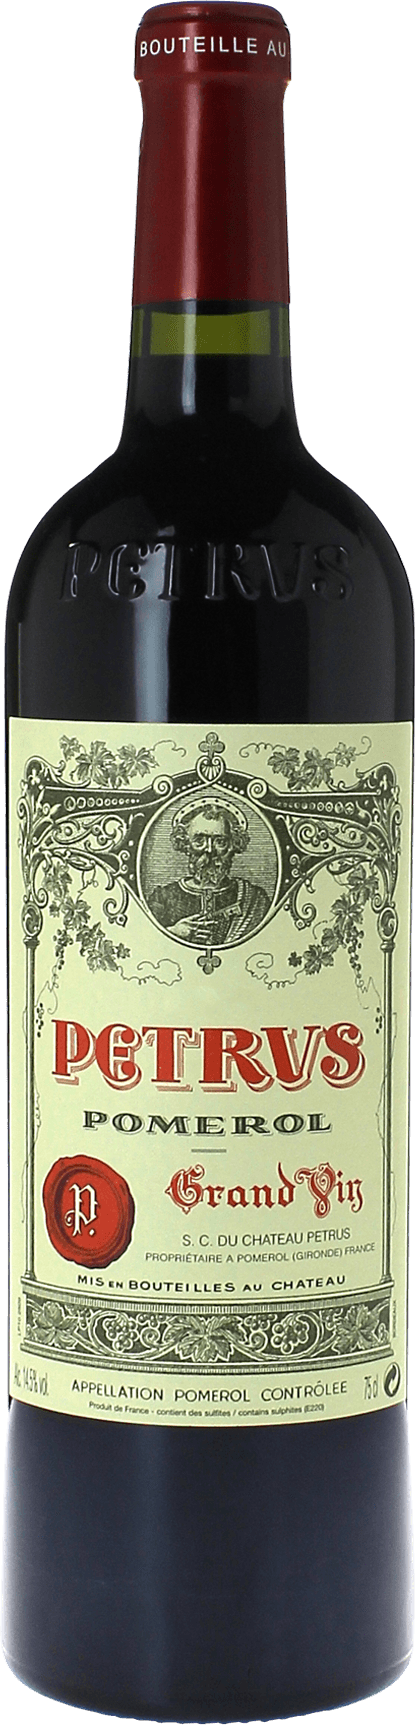 Petrus 1995  Pomerol, Bordeaux rouge